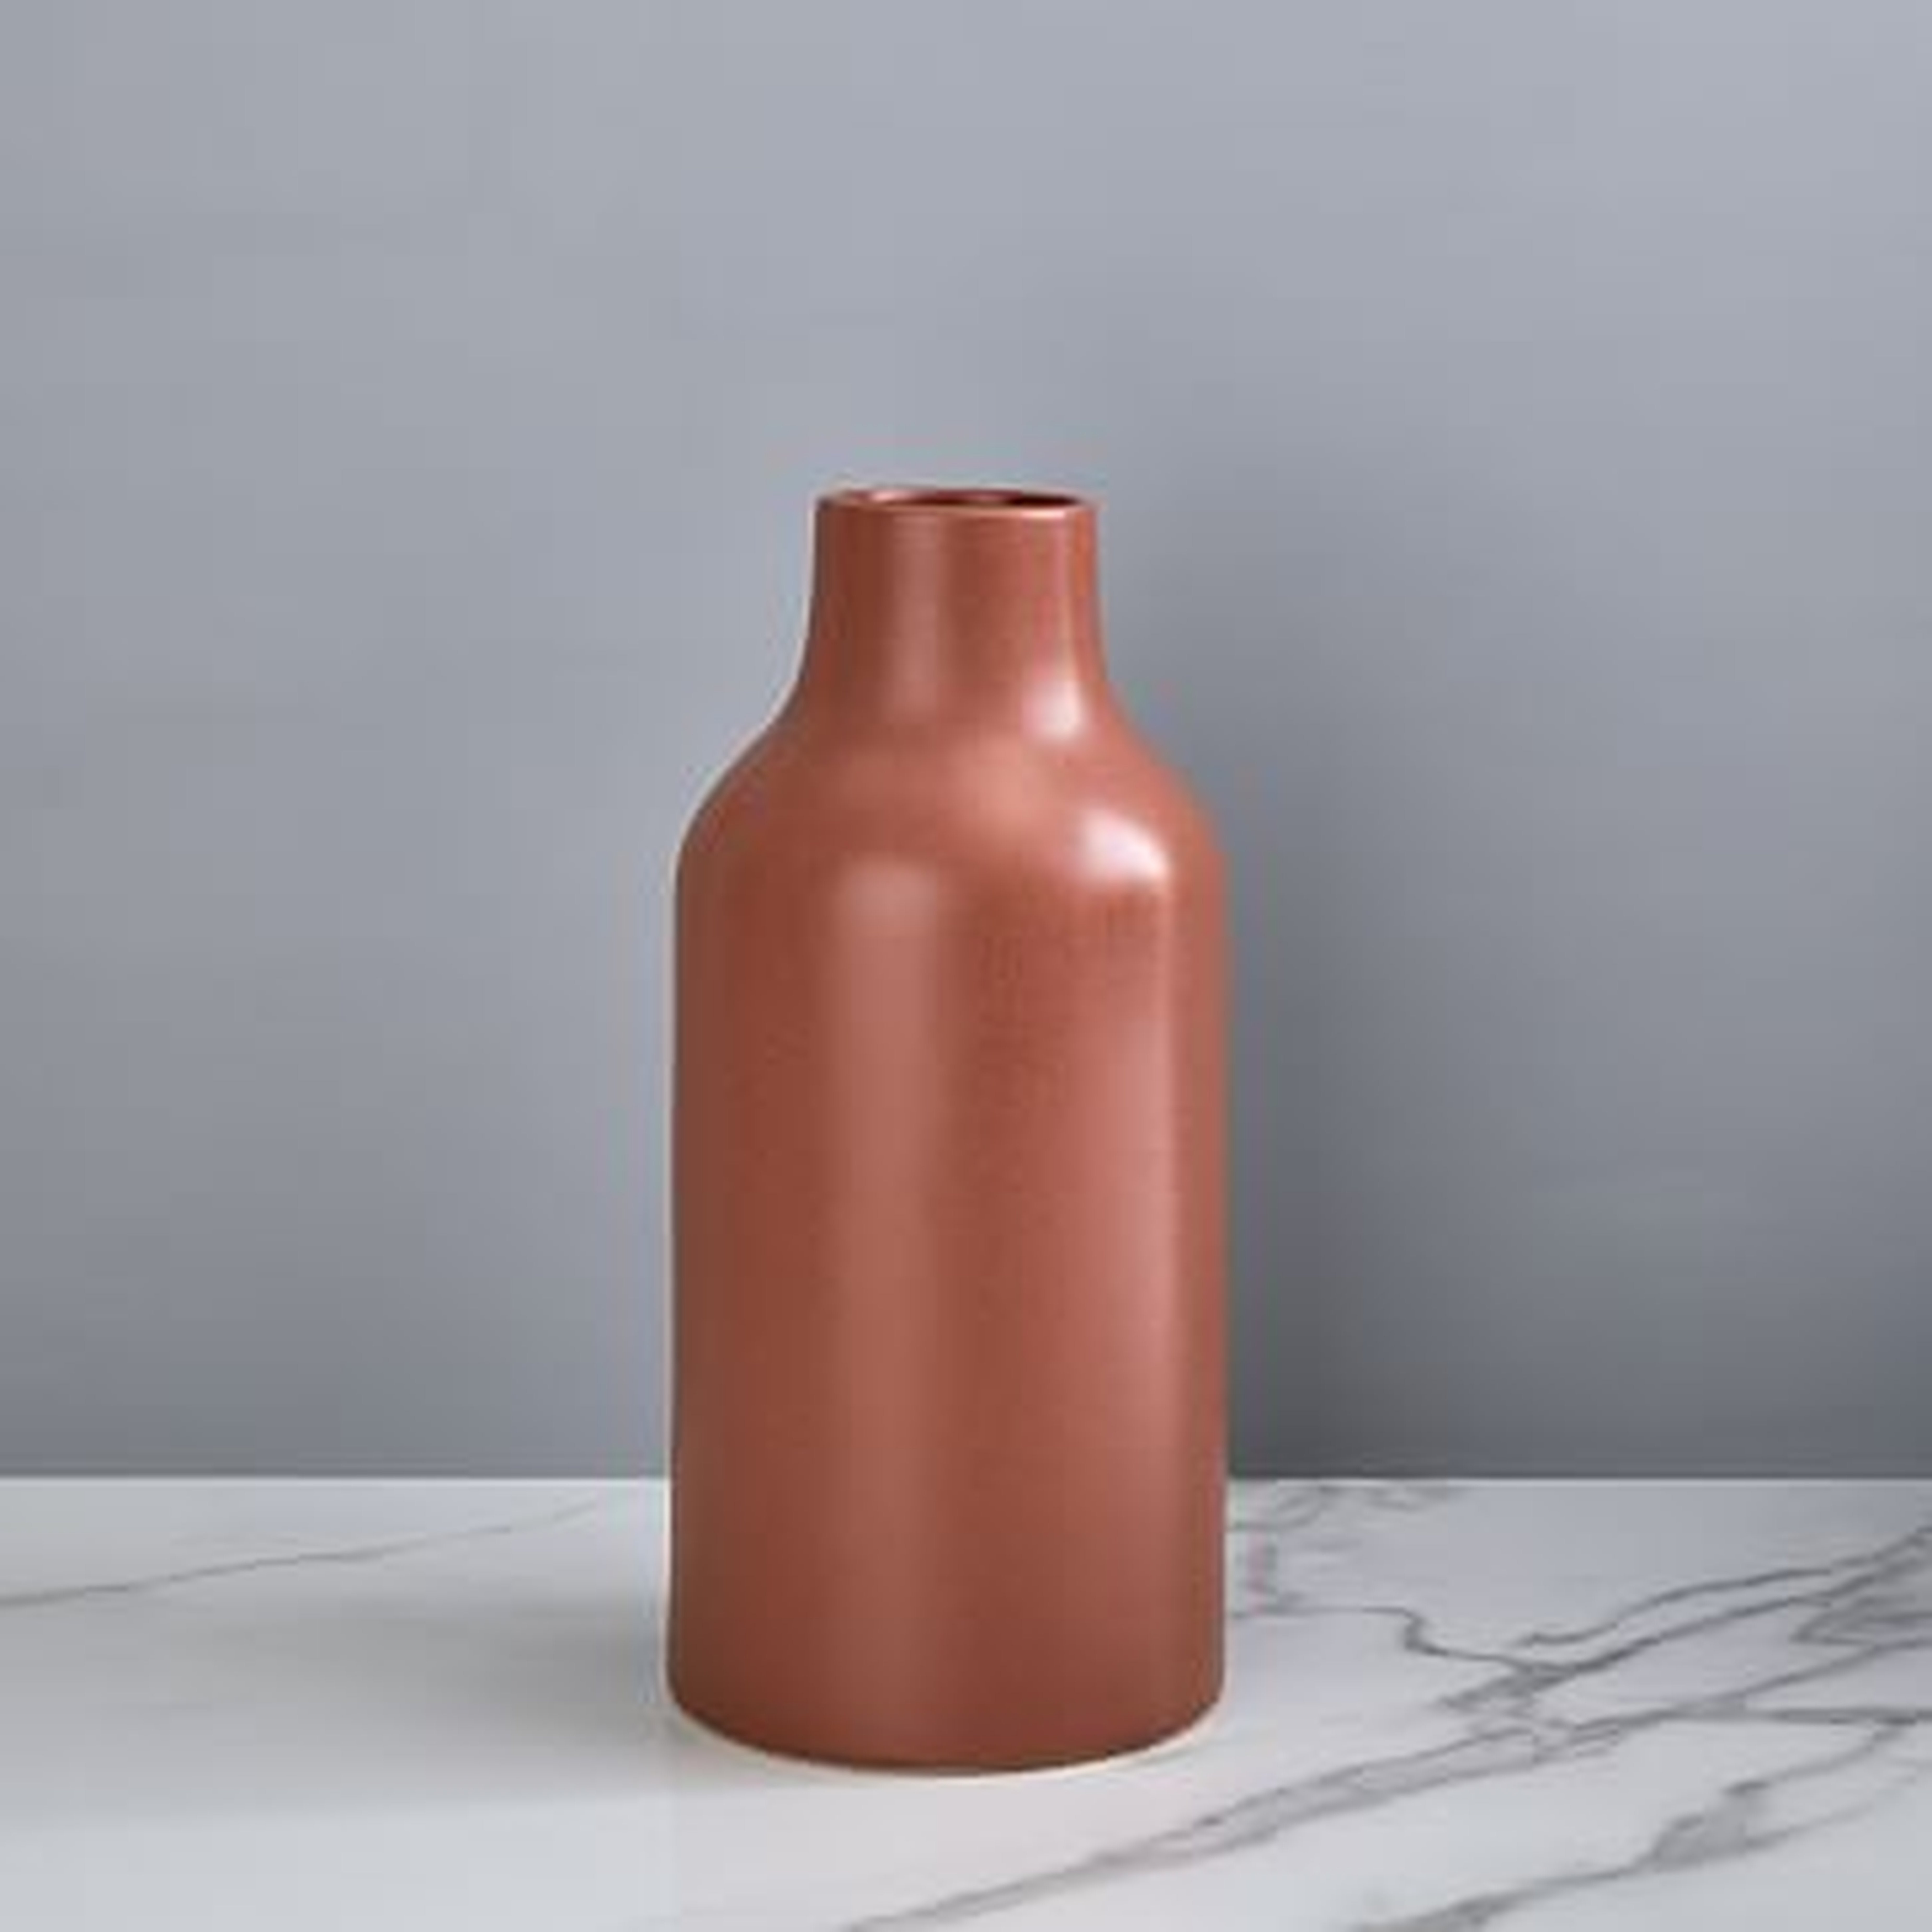 Pure Ceramic Vase, Jug, Clay - West Elm